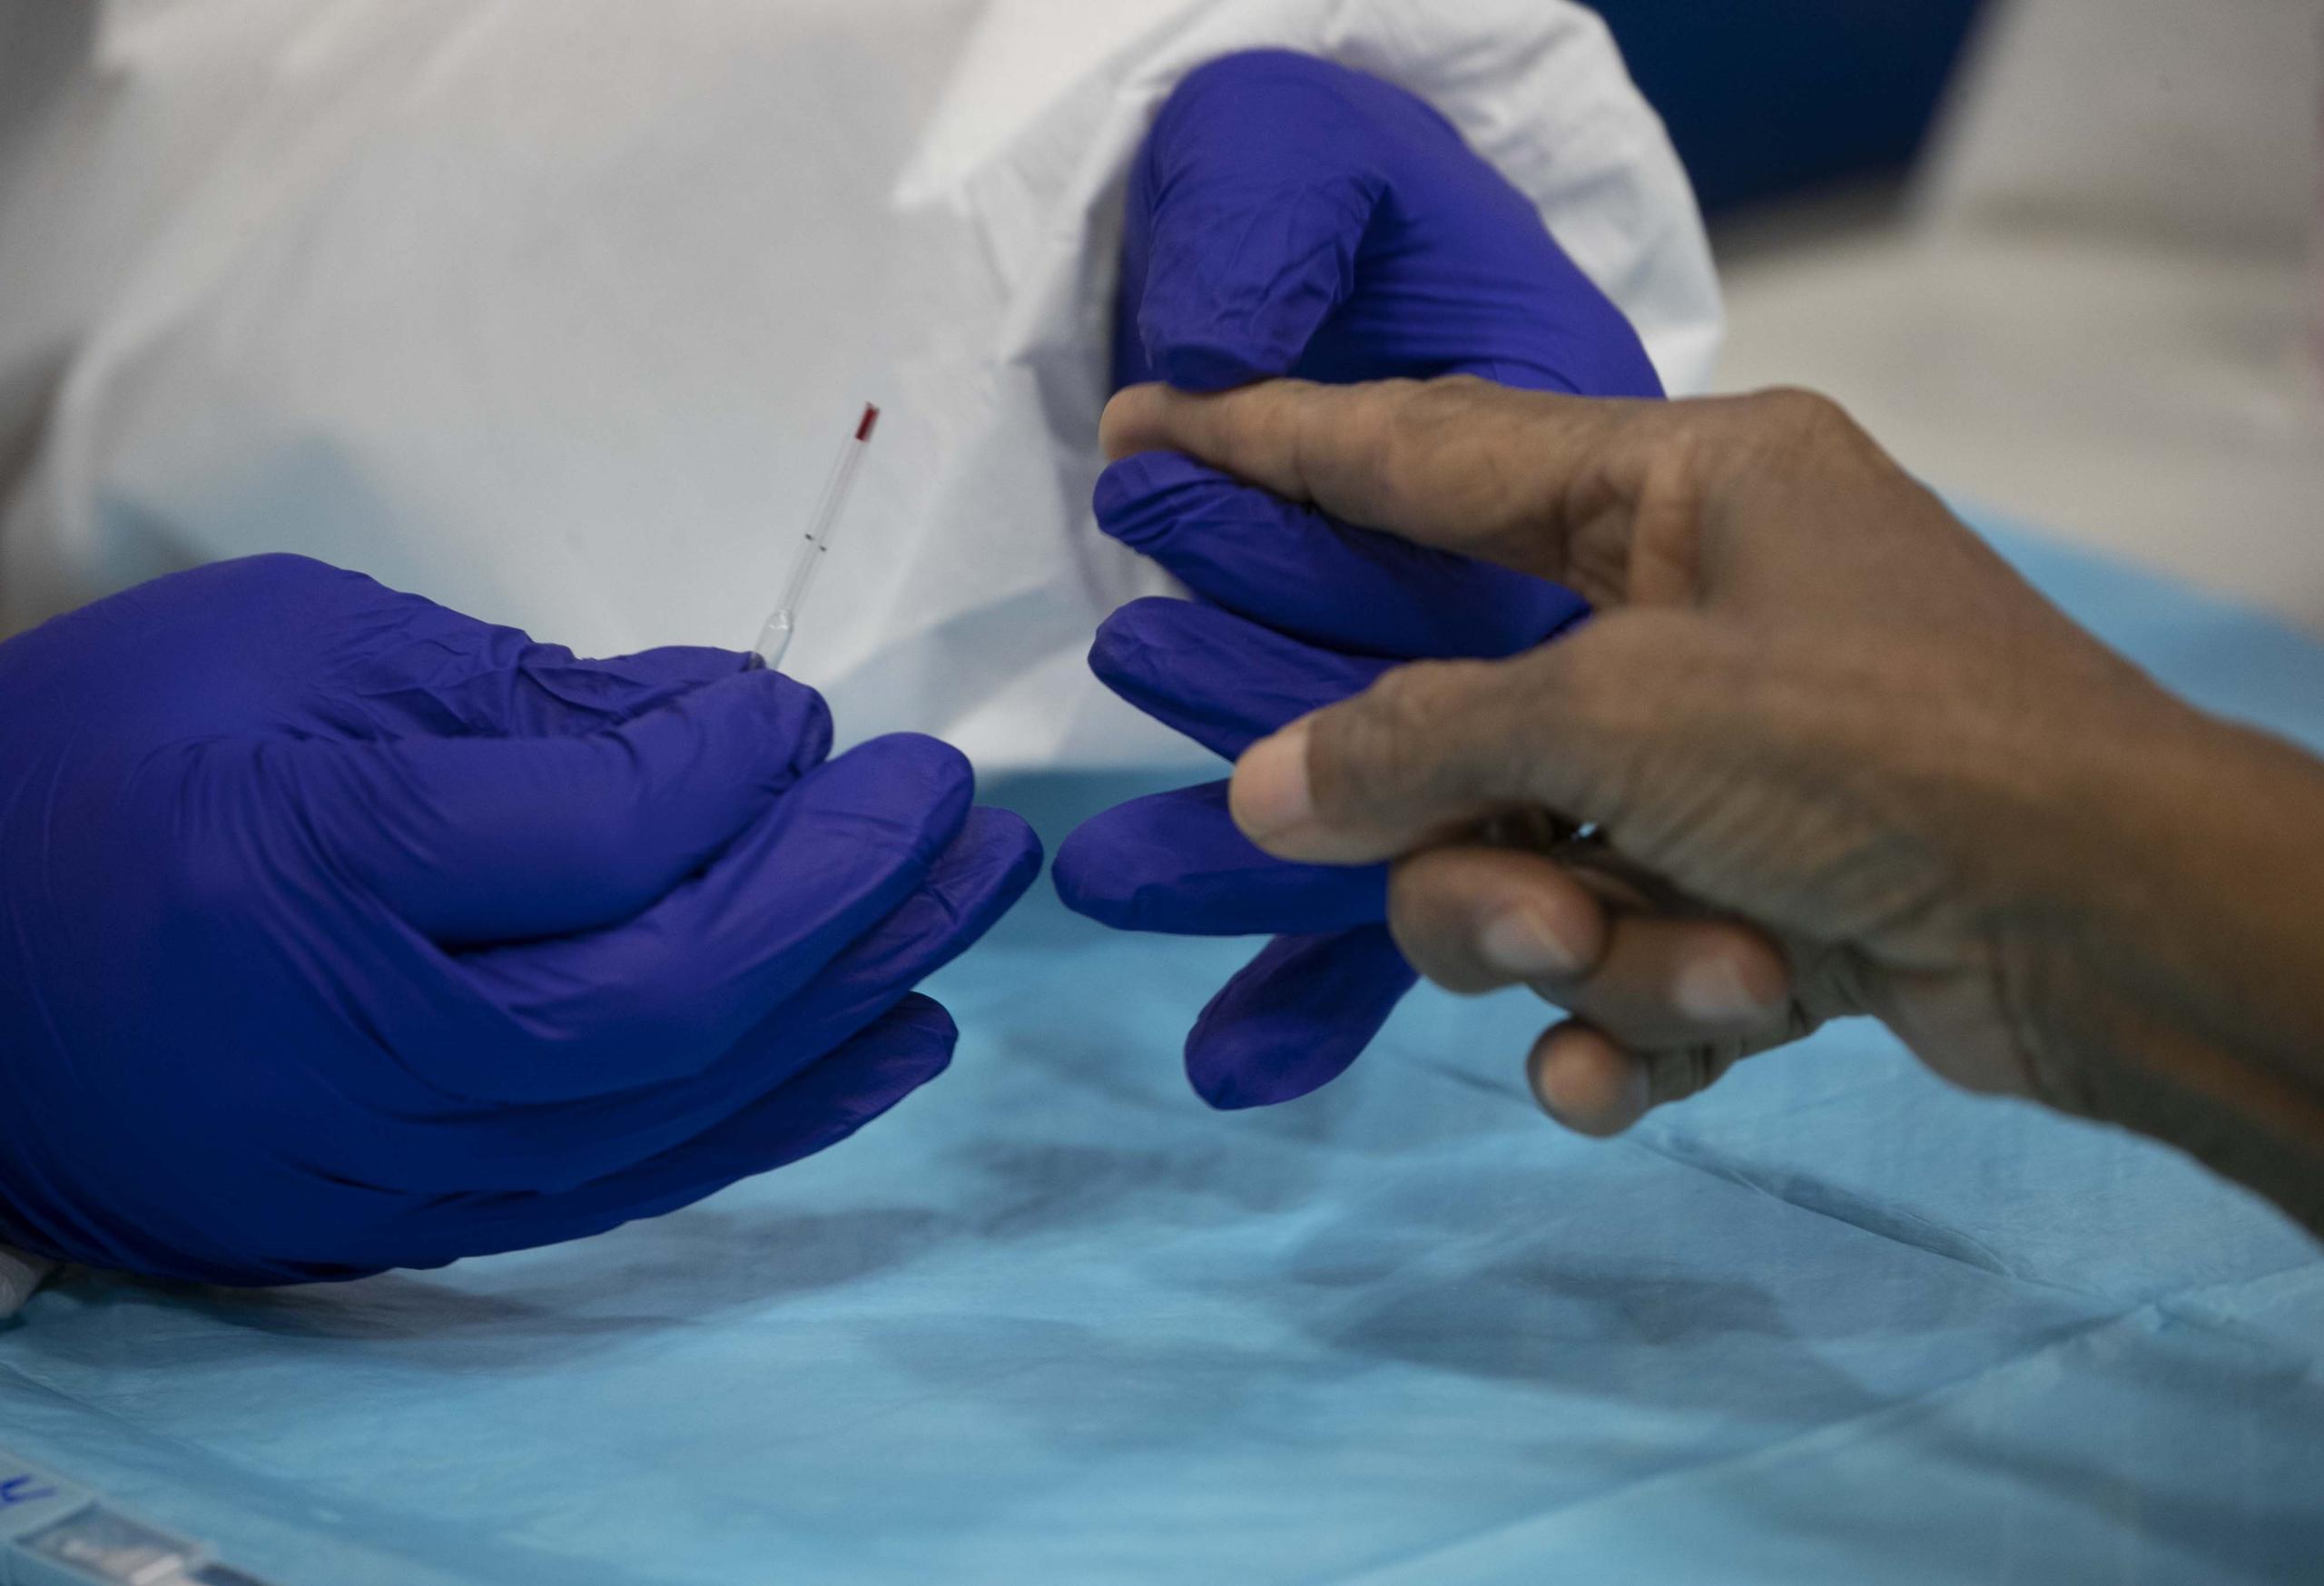 Momento en que una enfermera le toma una muestra de sangre a una persona para hacer la prueba de COVID-19. (GFR Media)